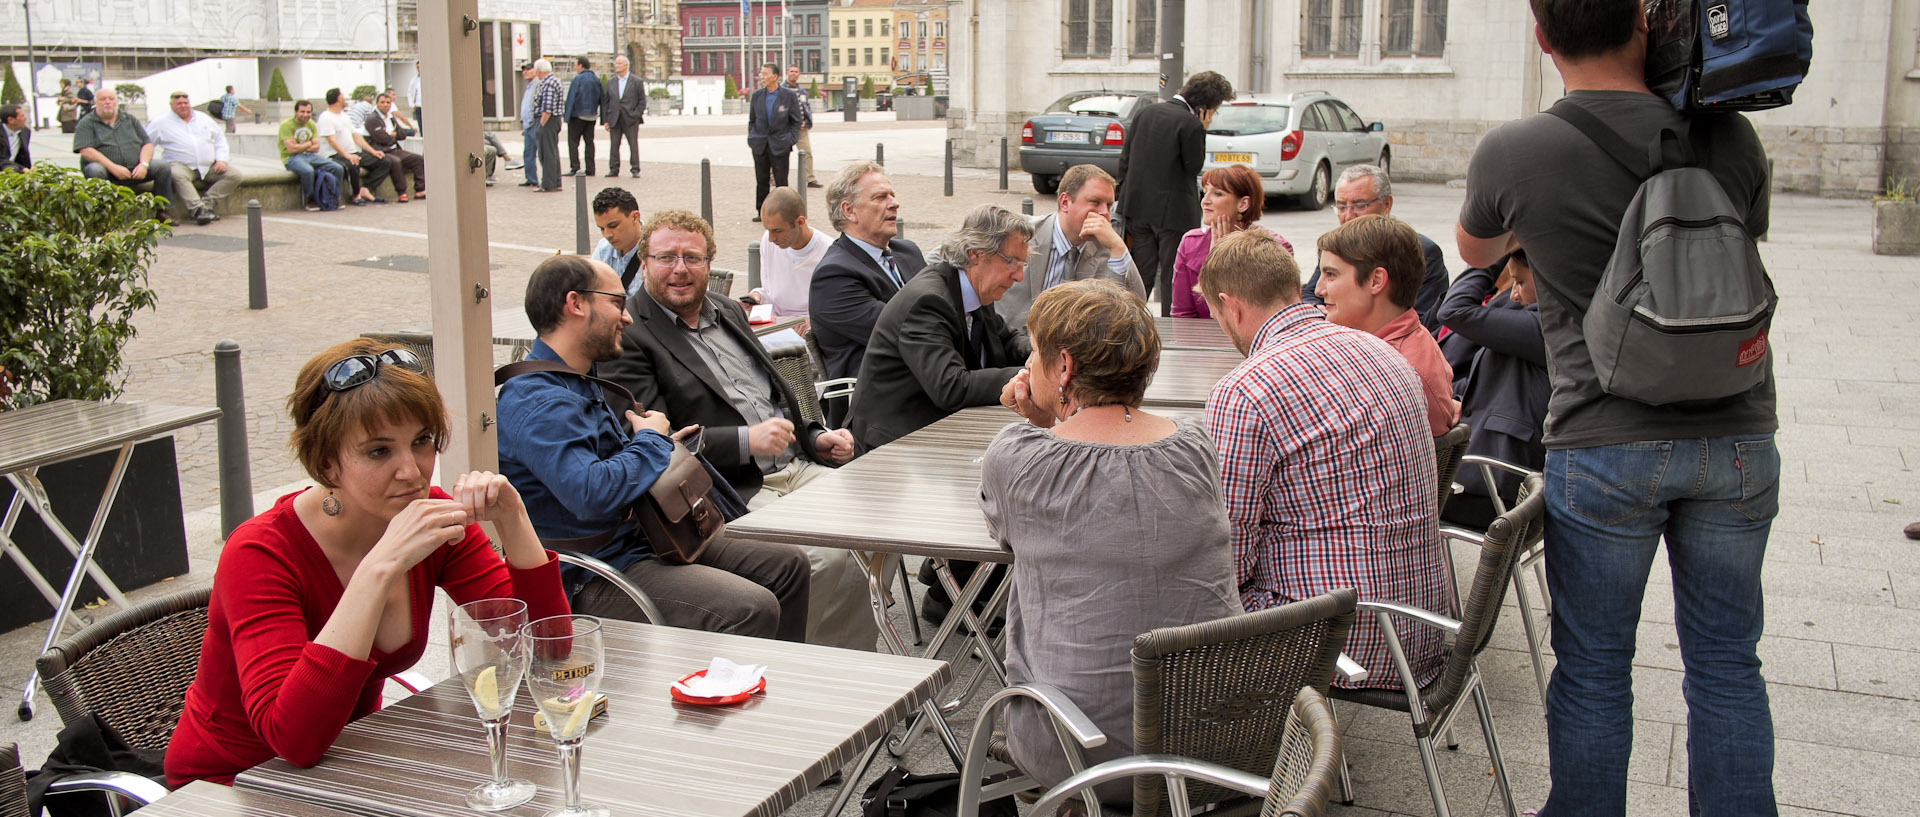 Femme pensive à la terrasse d'un café, à côté de dirigeants socialises et écologistes, Grand Place, à Roubaix.